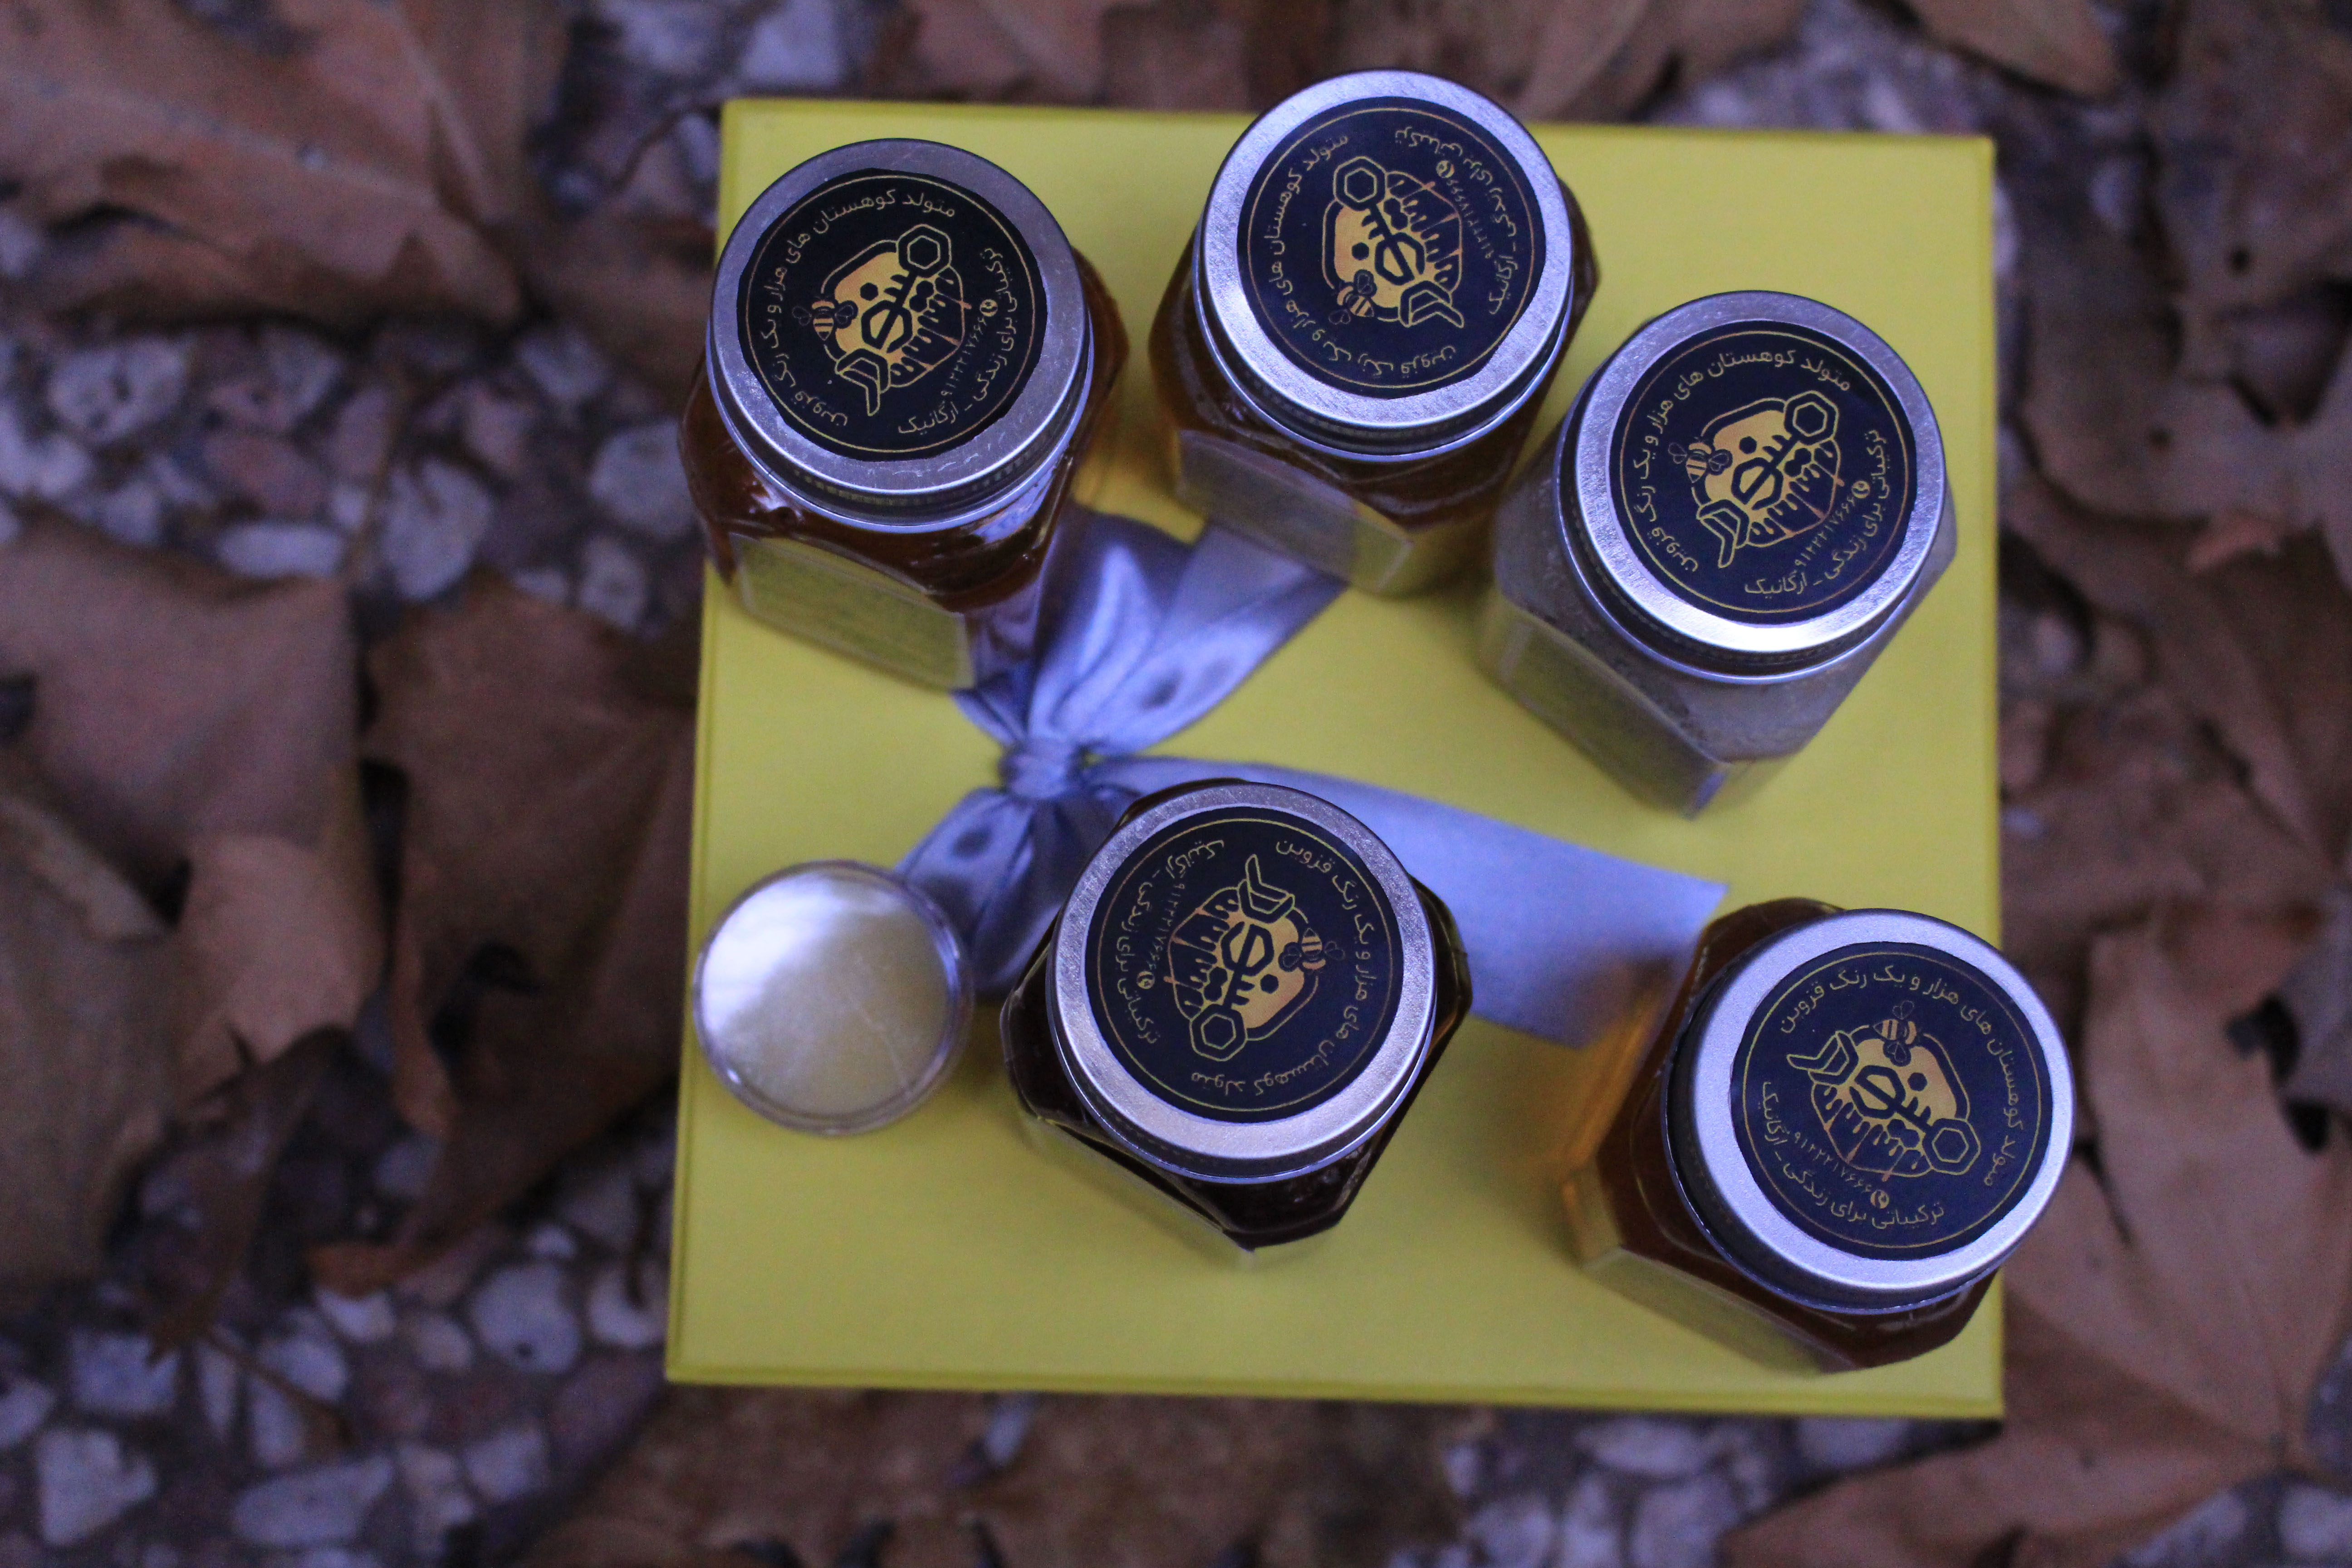 پک سلامتی هدیه عیدانه عسل های مجموعه مینودر شامل: عسل گون، عسل گشنیز، عسل آویشن، عسل چهل گیاه، عسل خامه ای هر کدام صد گرمی + ده گرم ژل رویال ایرانی درجه یک مینودر + 100 گرم گرده گل، قاشق عسل، شمع موم زنبور عسل و اسماج + جعبه و بسته بندی خاص